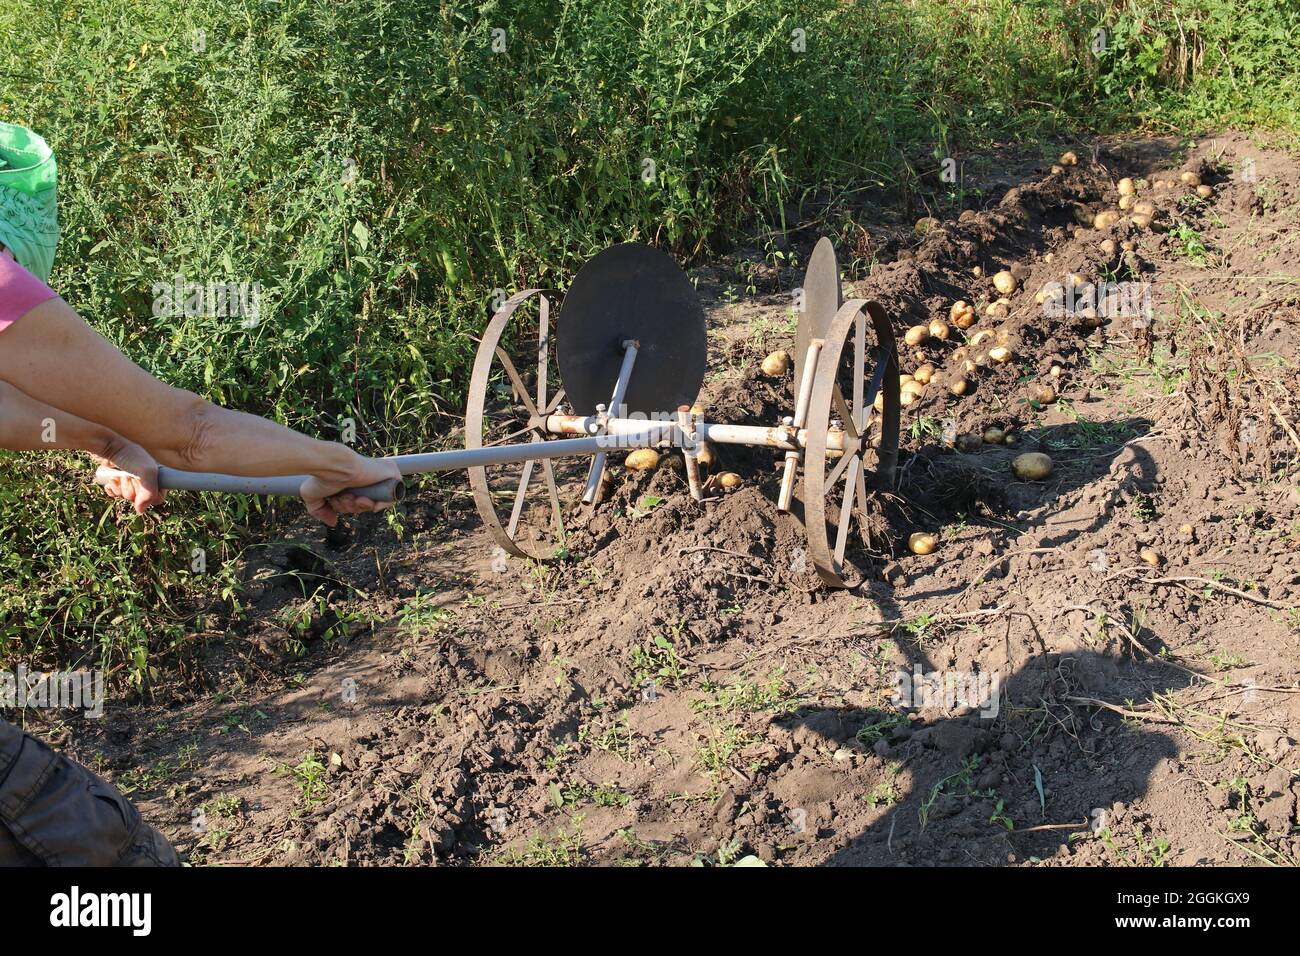 Una donna agricoltore raccoglie le patate utilizzando un aratro a mano. Aratro manuale per piantare e raccogliere patate. Foto Stock